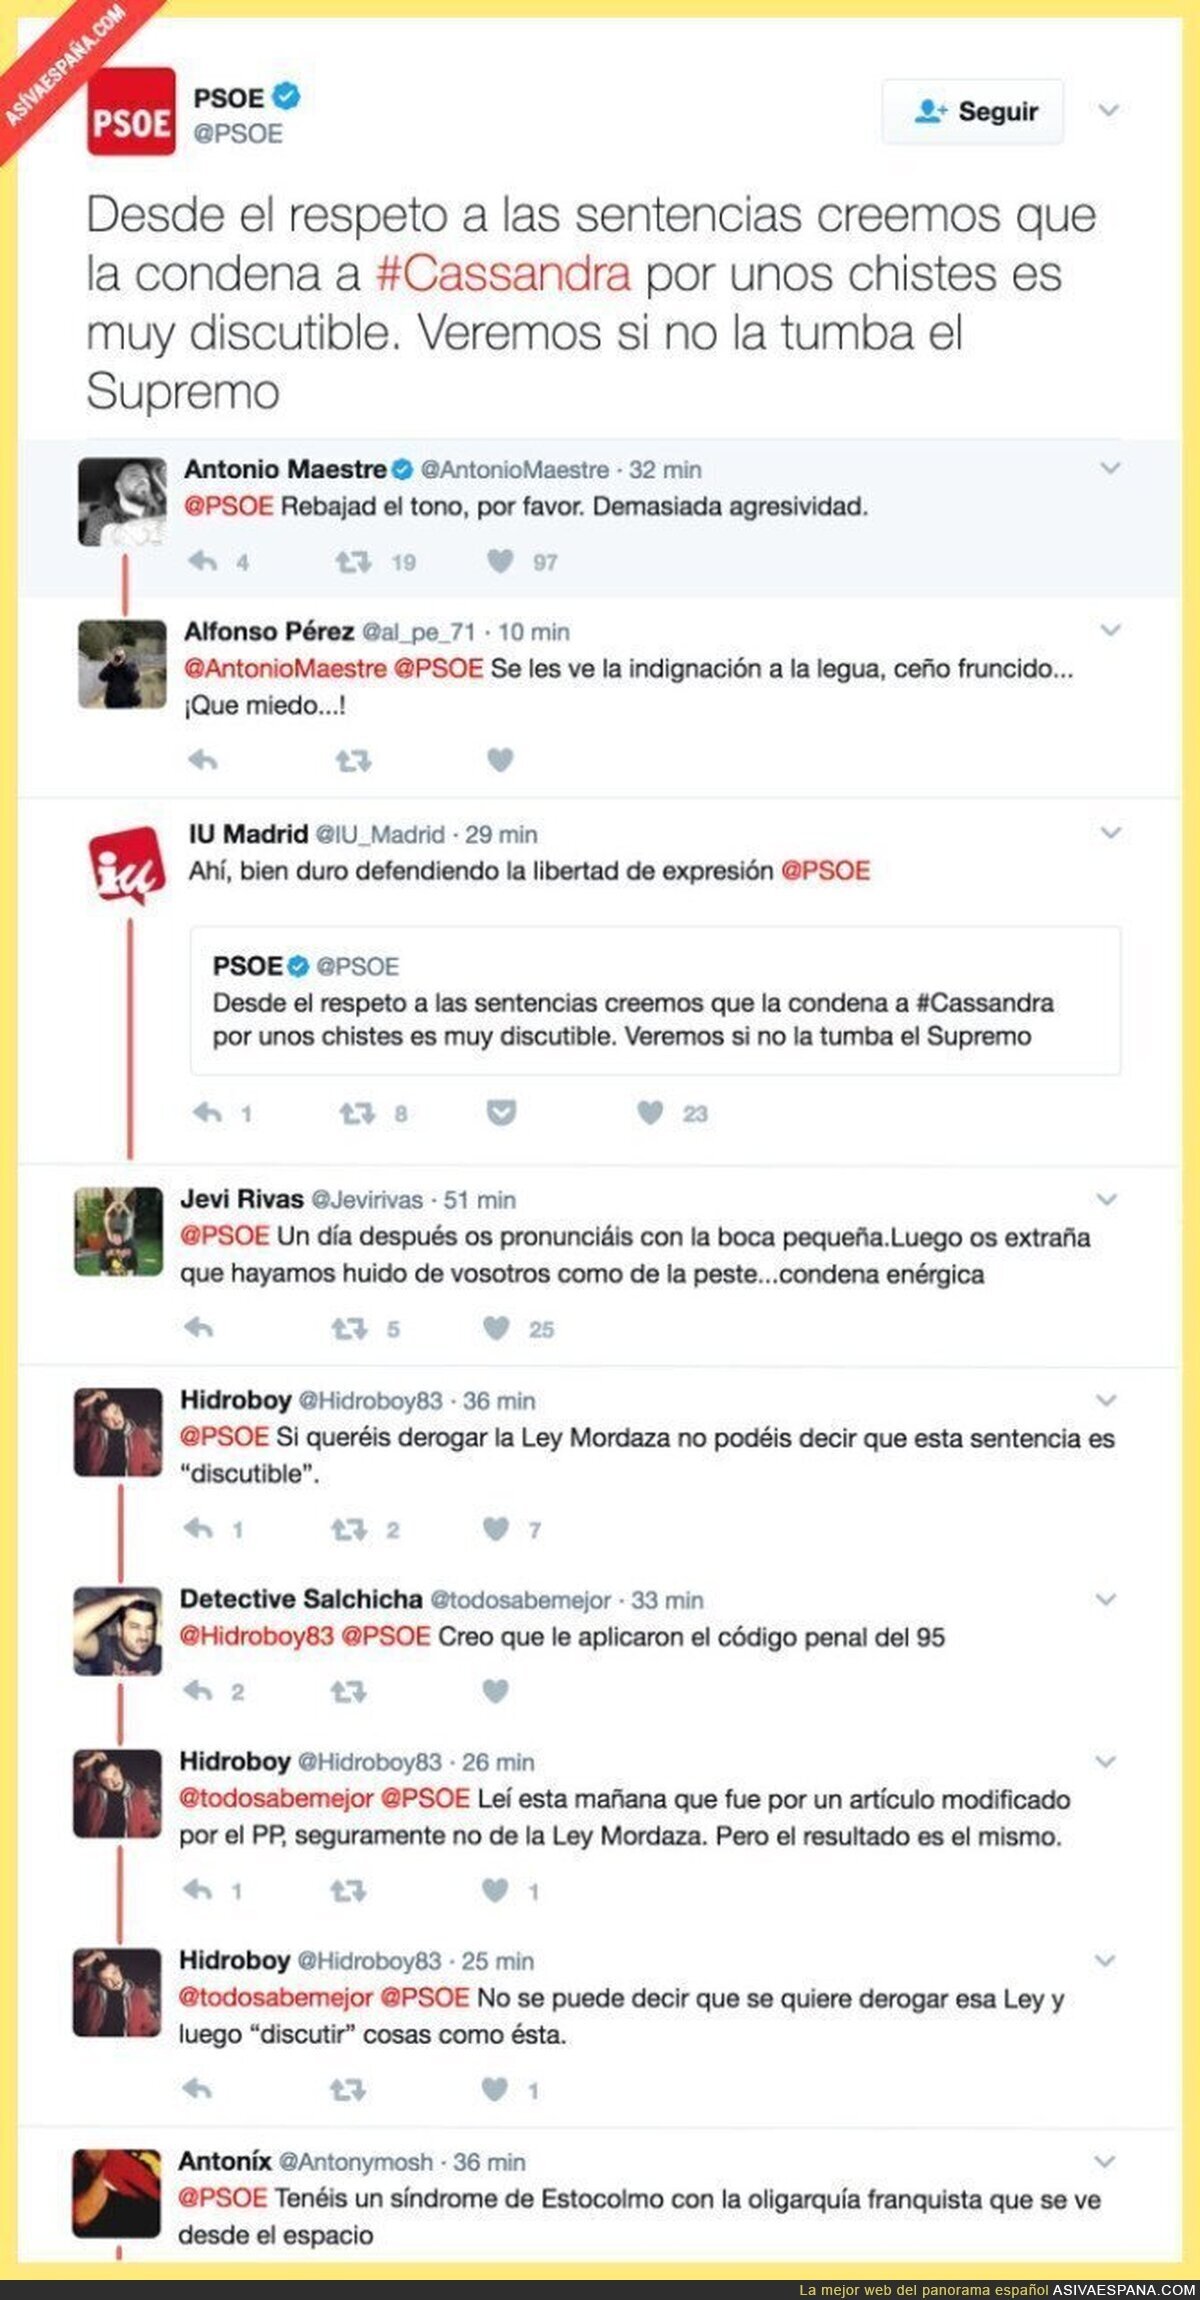 El PSOE "defiende" a Cassandra y su libertad de expresión de forma muy triste